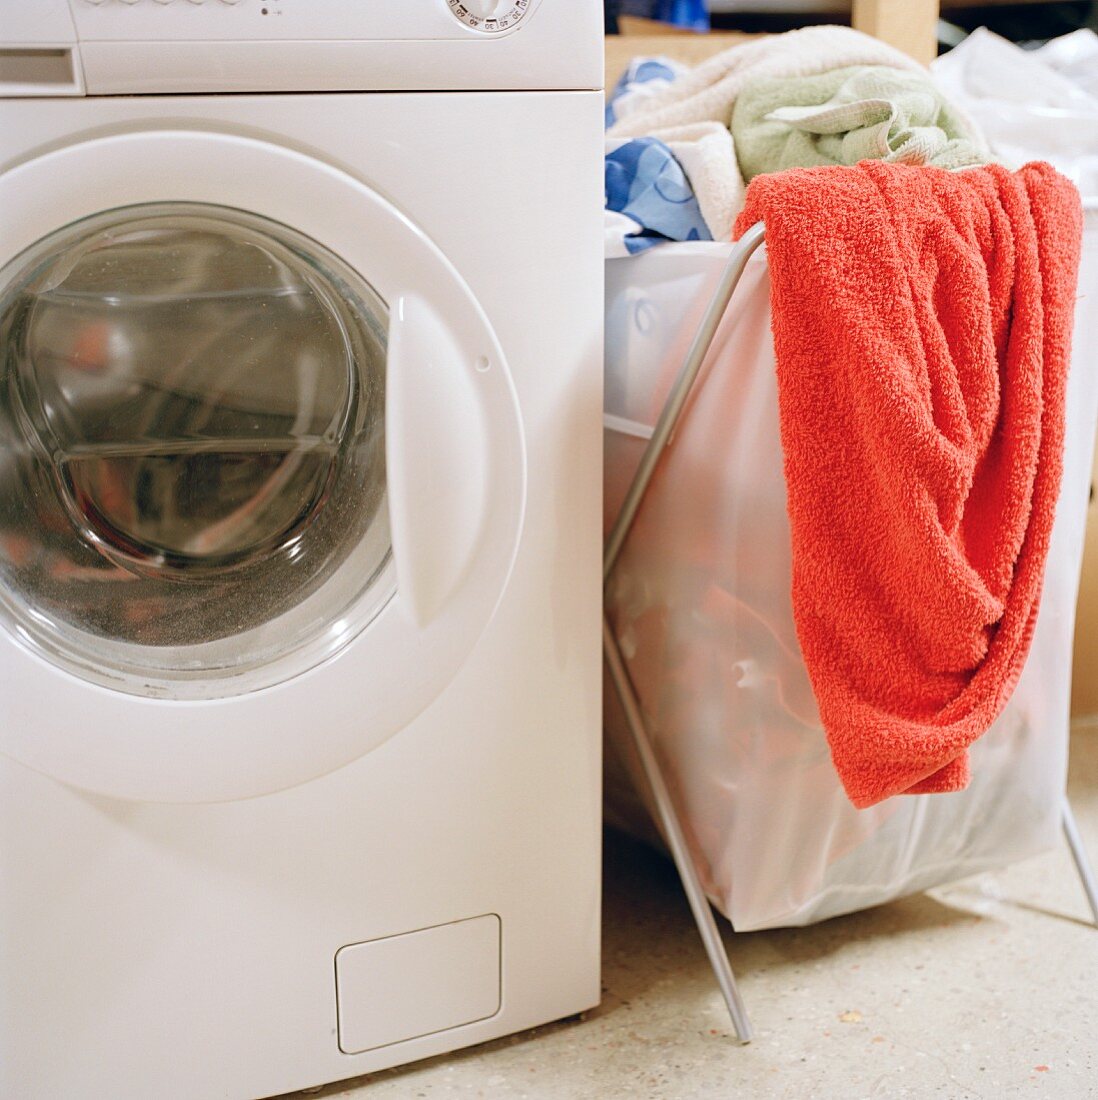 Gefüllter Wäschekorb neben Waschmaschine